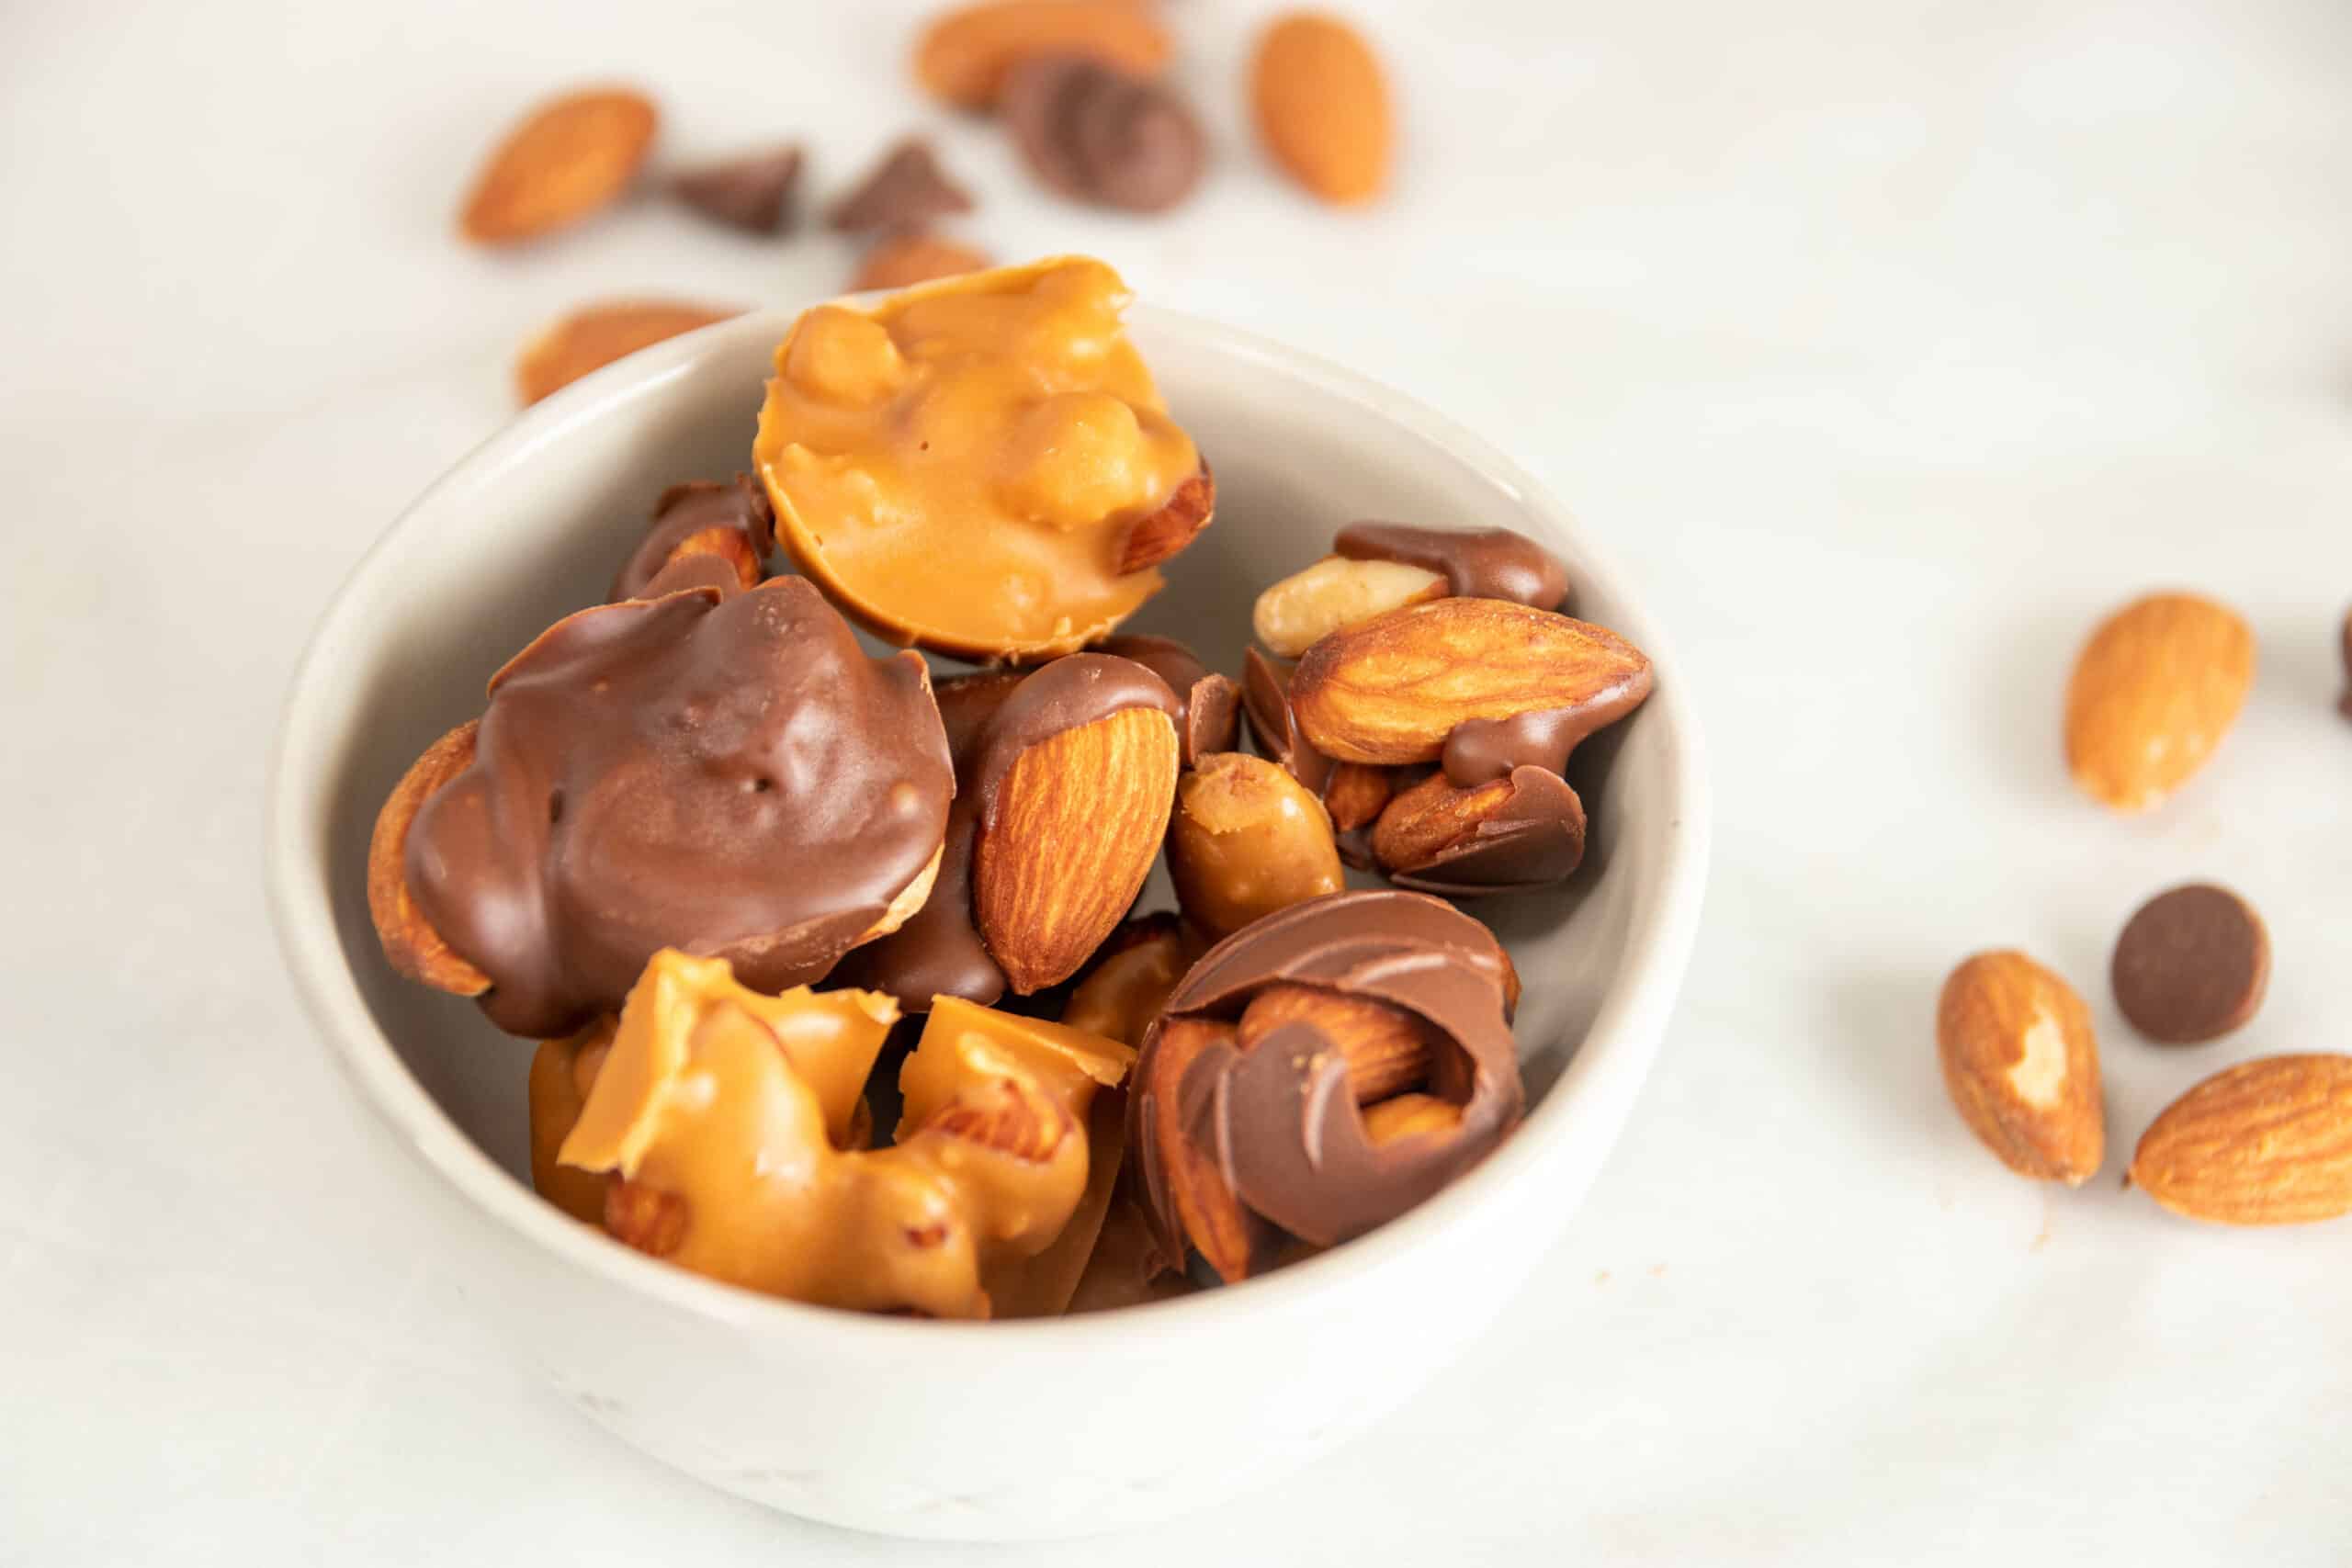 Keto 3 ingredient Chocolate Nut Clusters